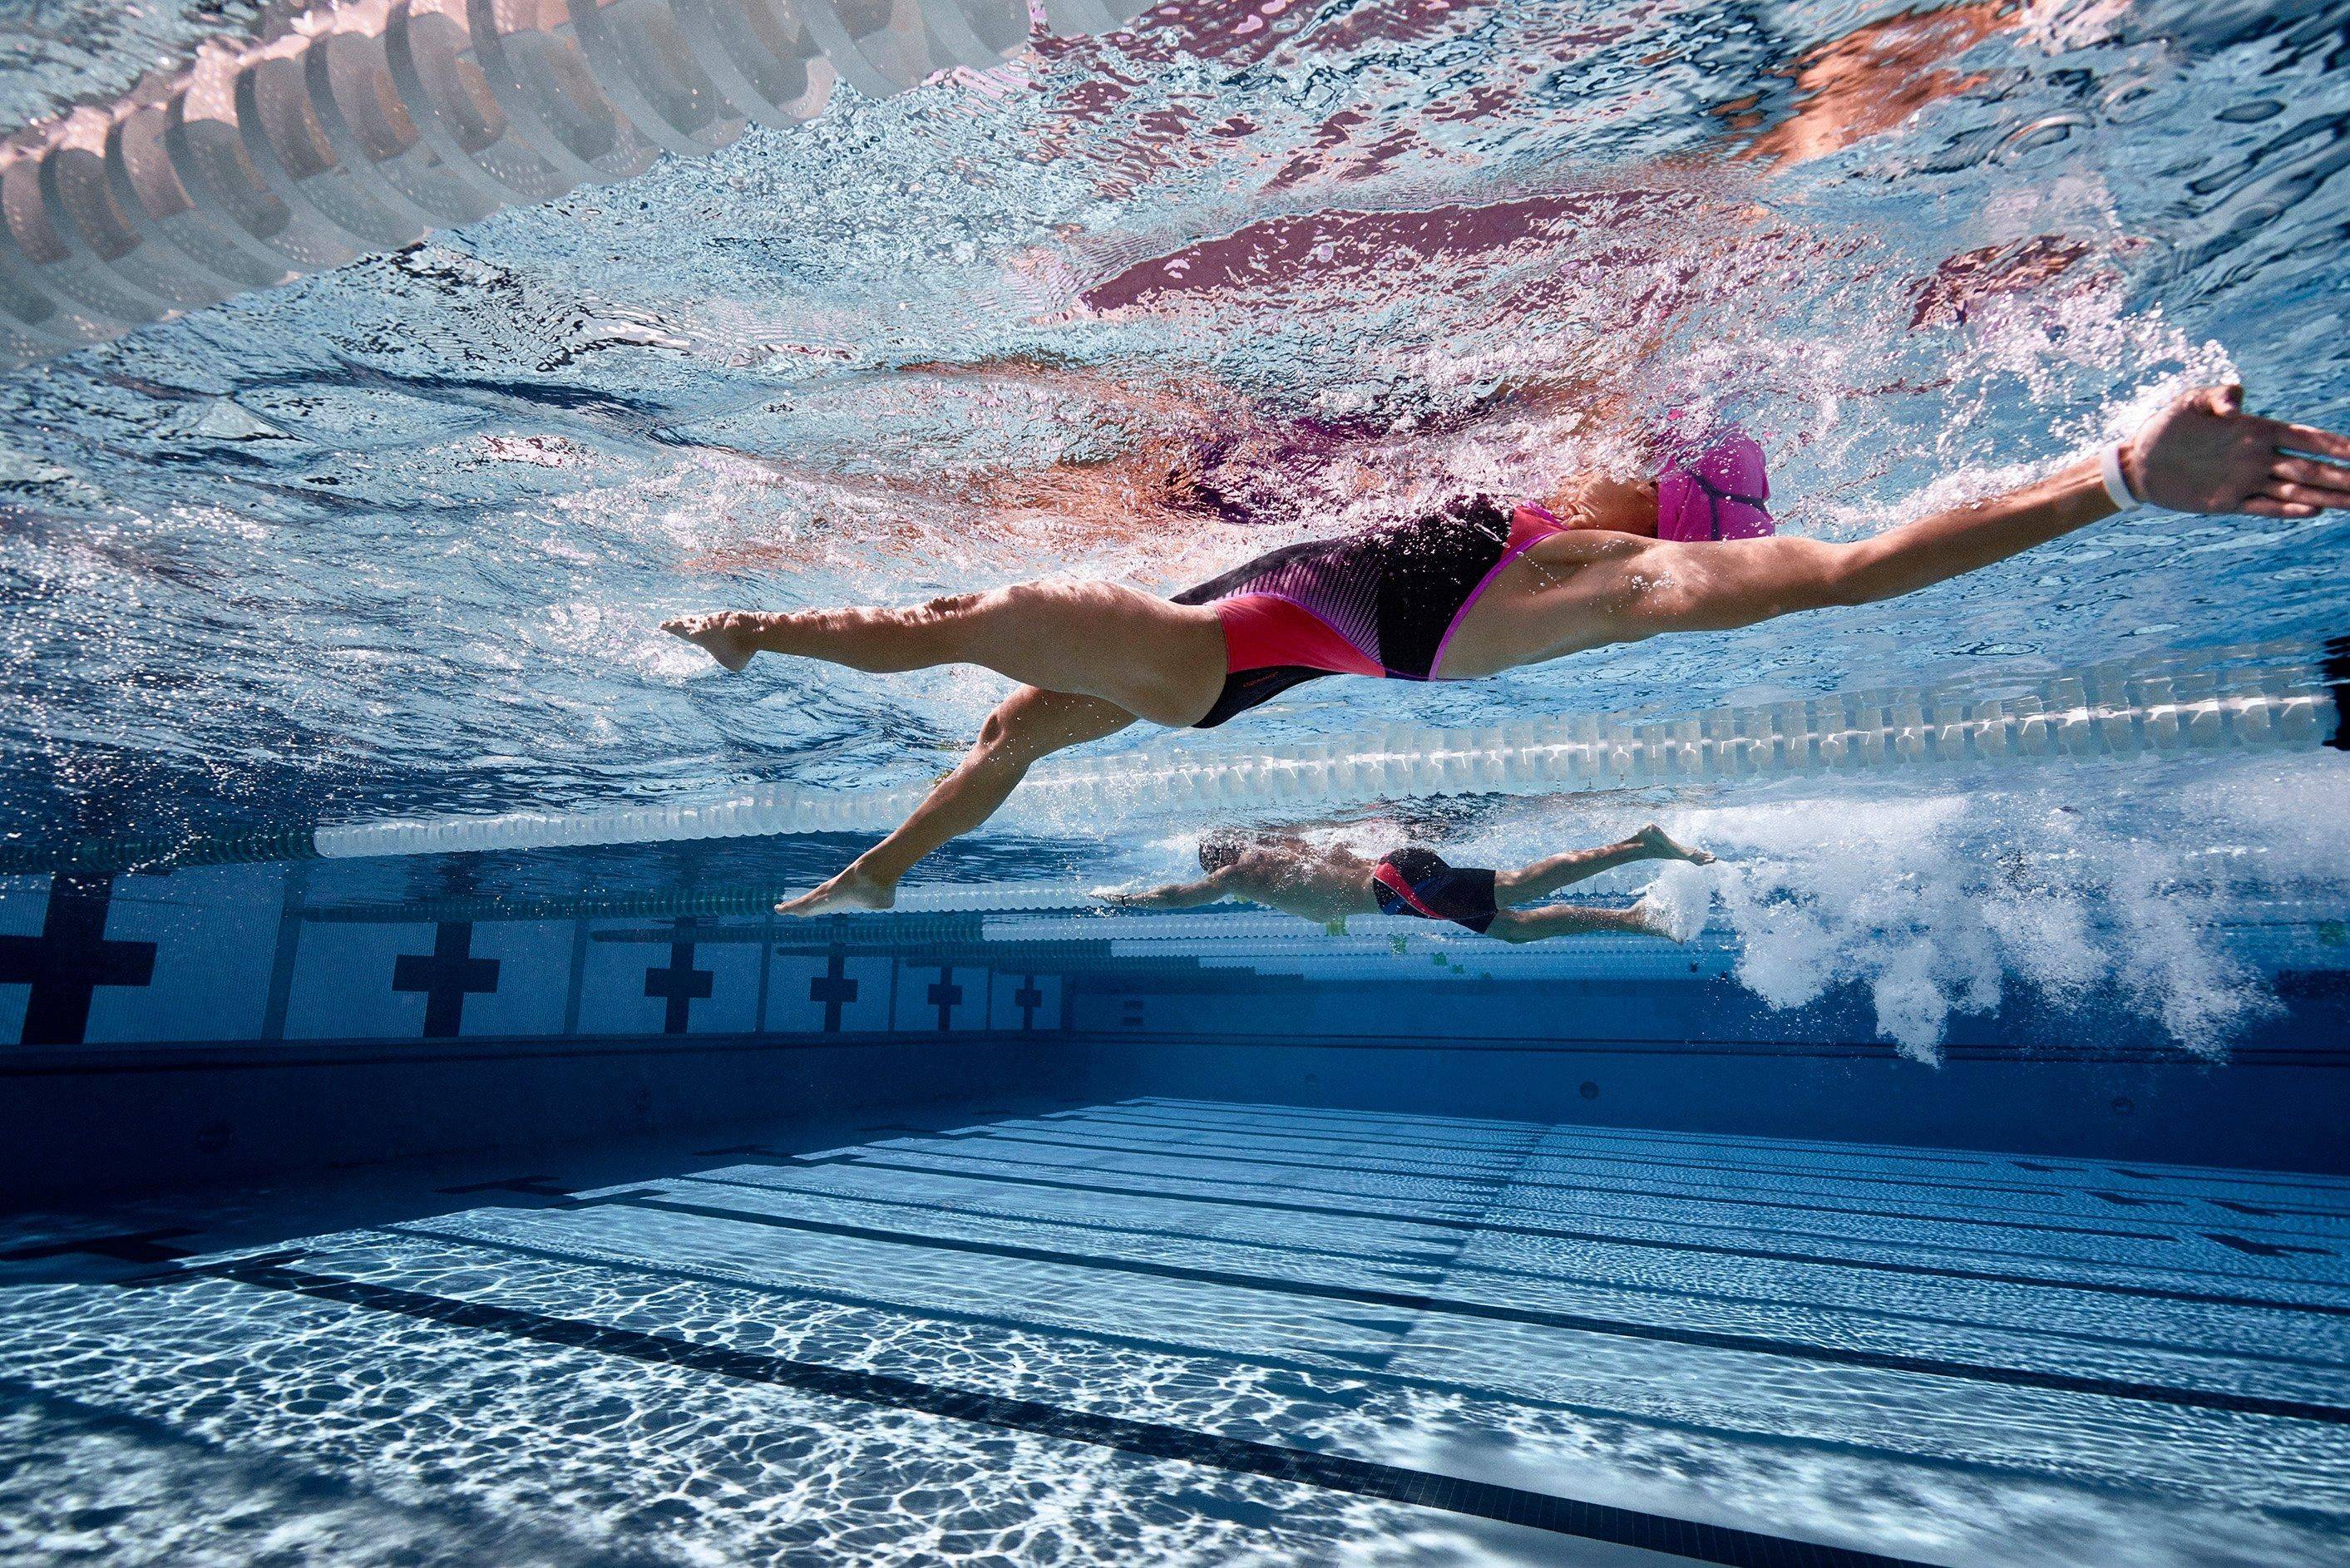 Закрыли в бассейне в воде. Олимпик Тбилиси бассейн. Плавание. Спортивное плавание. Занятие спортом плавание.